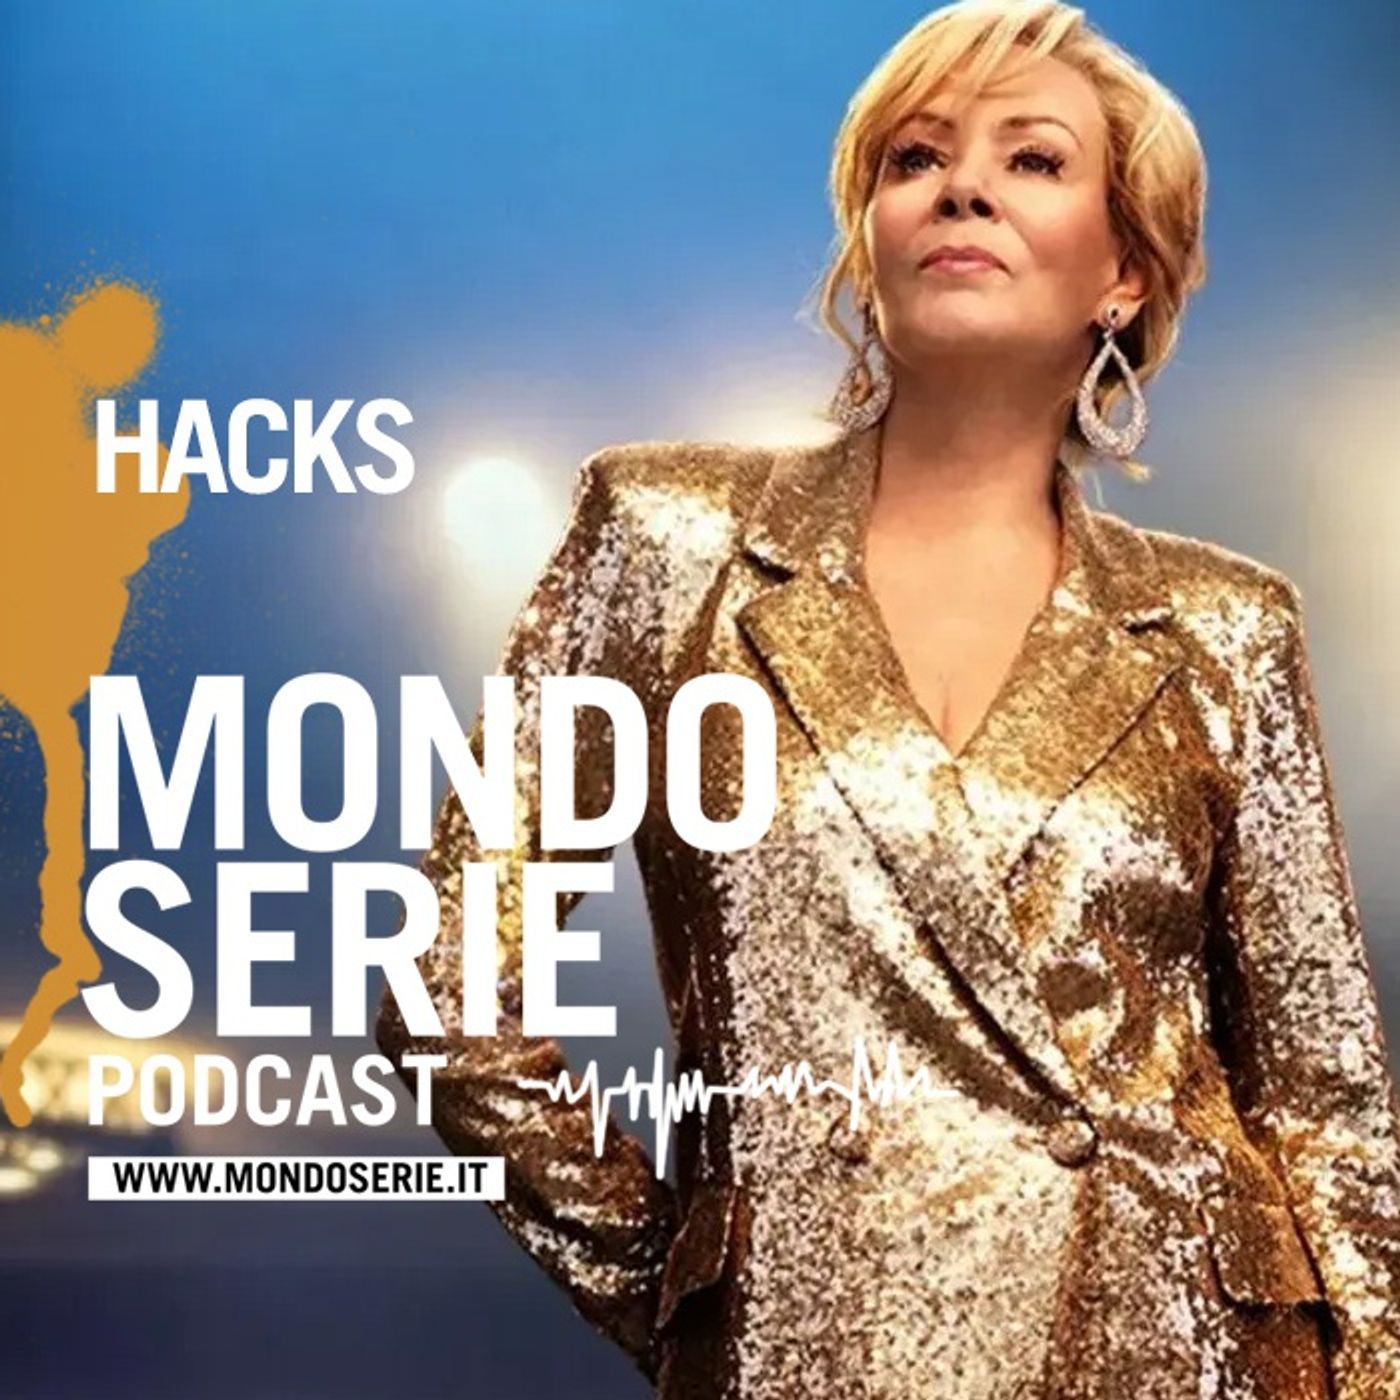 Hacks, satira al femminile dello show business | 5 minuti 1 serie